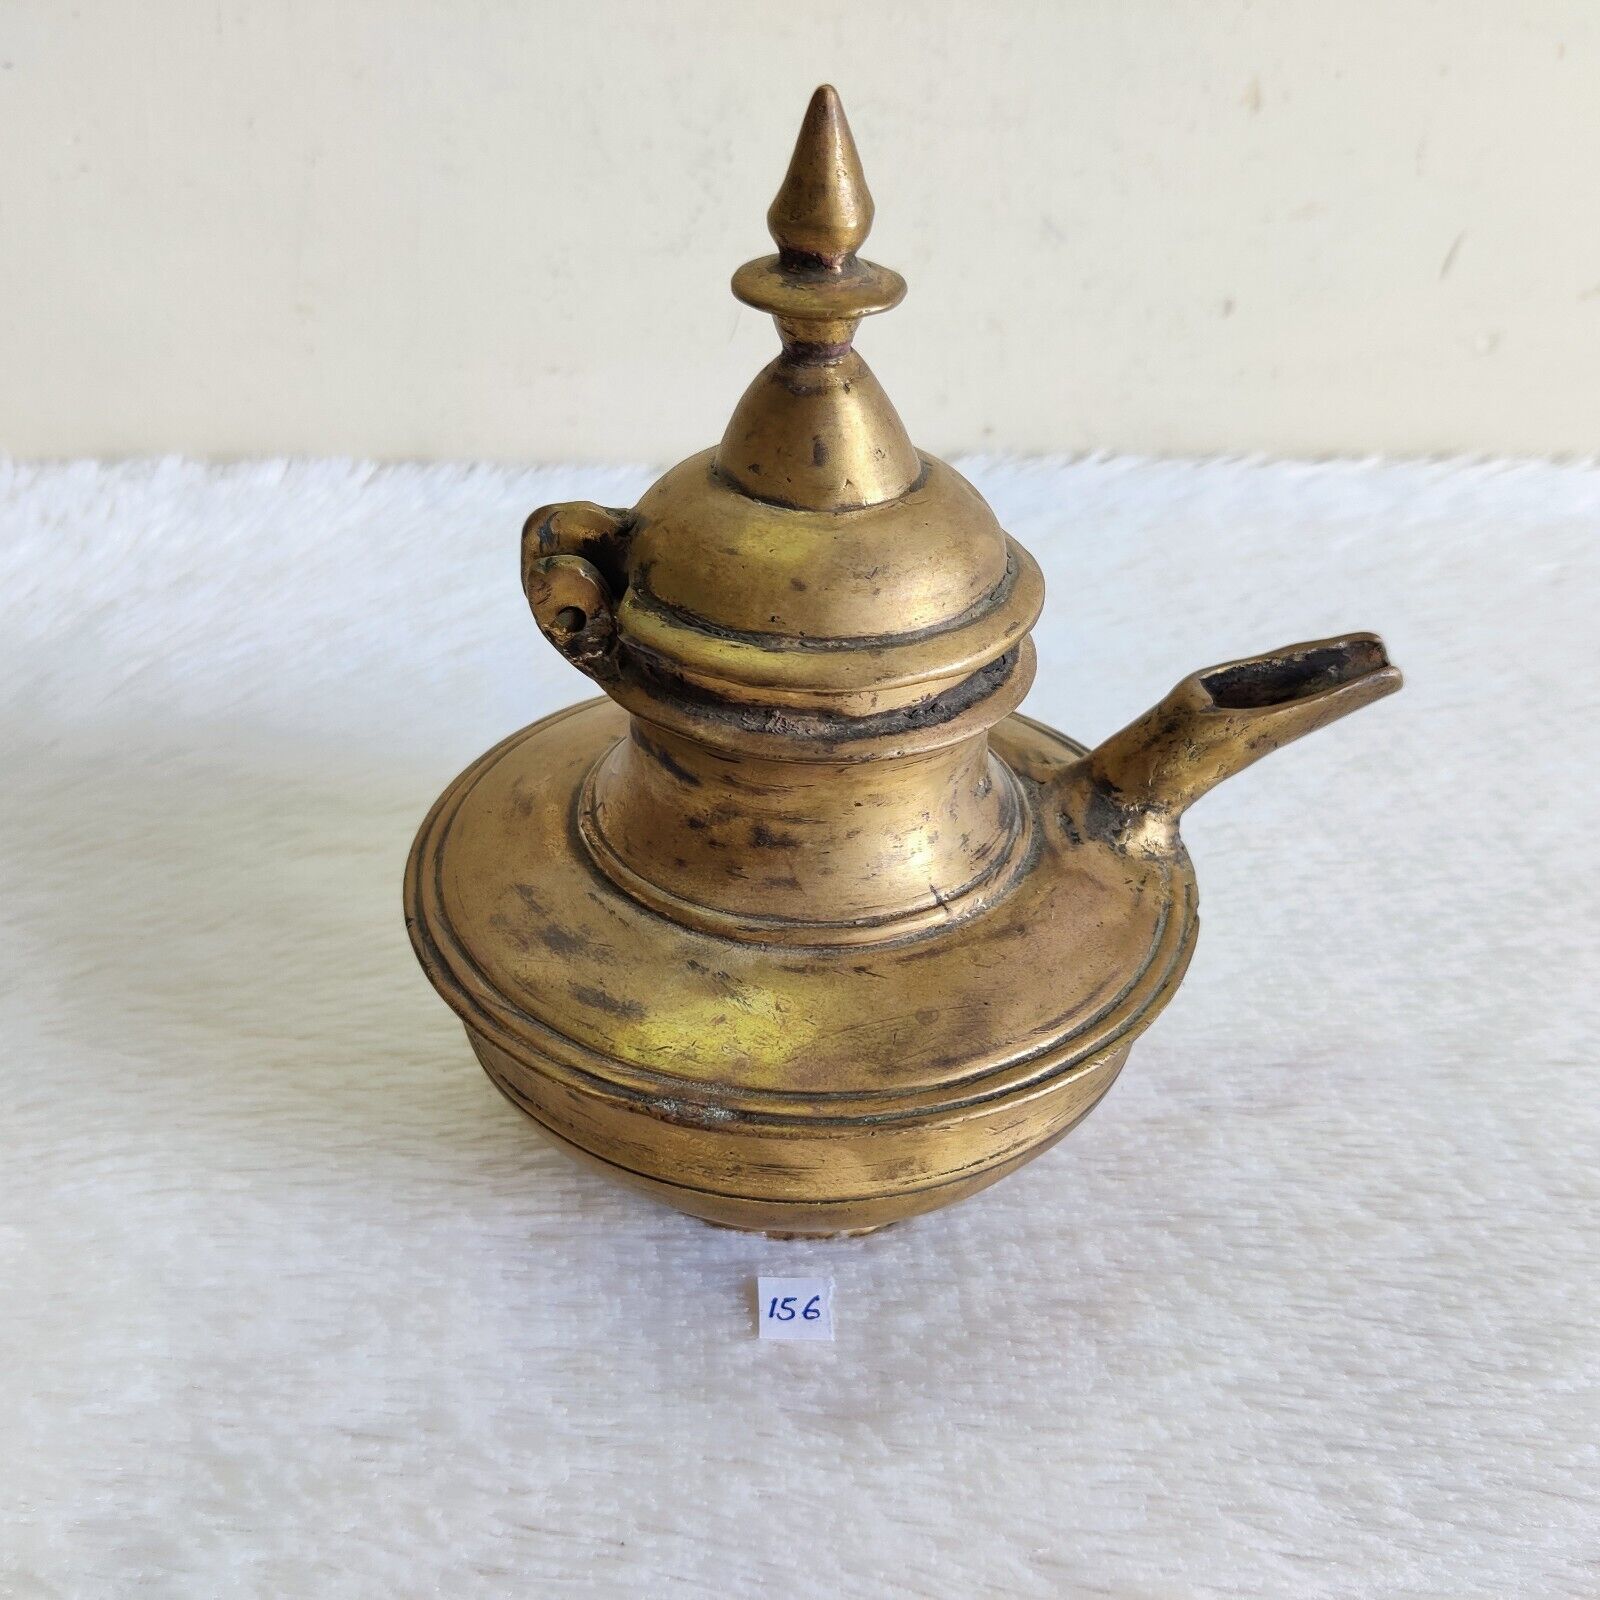 19c Vintage Unique Shape Indian Oil Pot Spout Brass Kitchen Collectible Rare 156